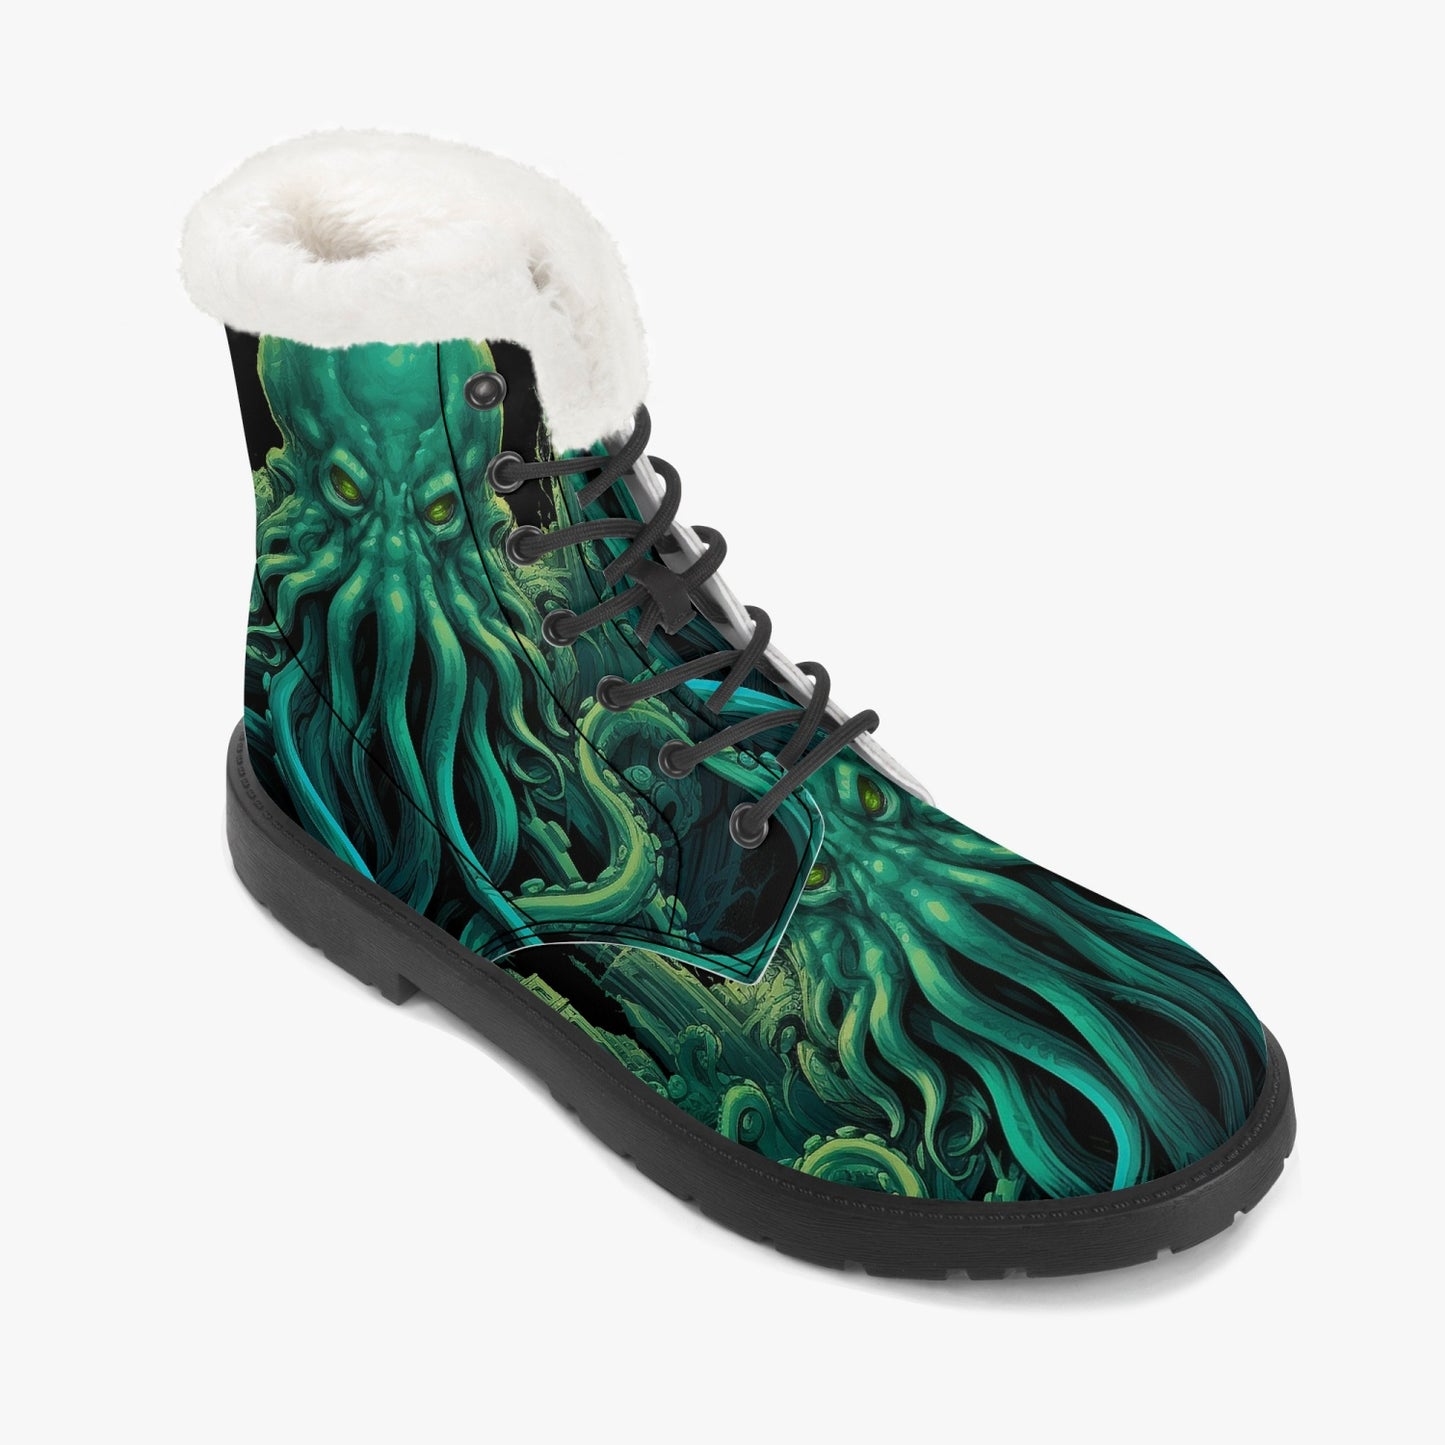 Cthulhu Victorian Horror Combat Boots - HP Lovecraft Sea Monster Green Boots (JPREGFHP)